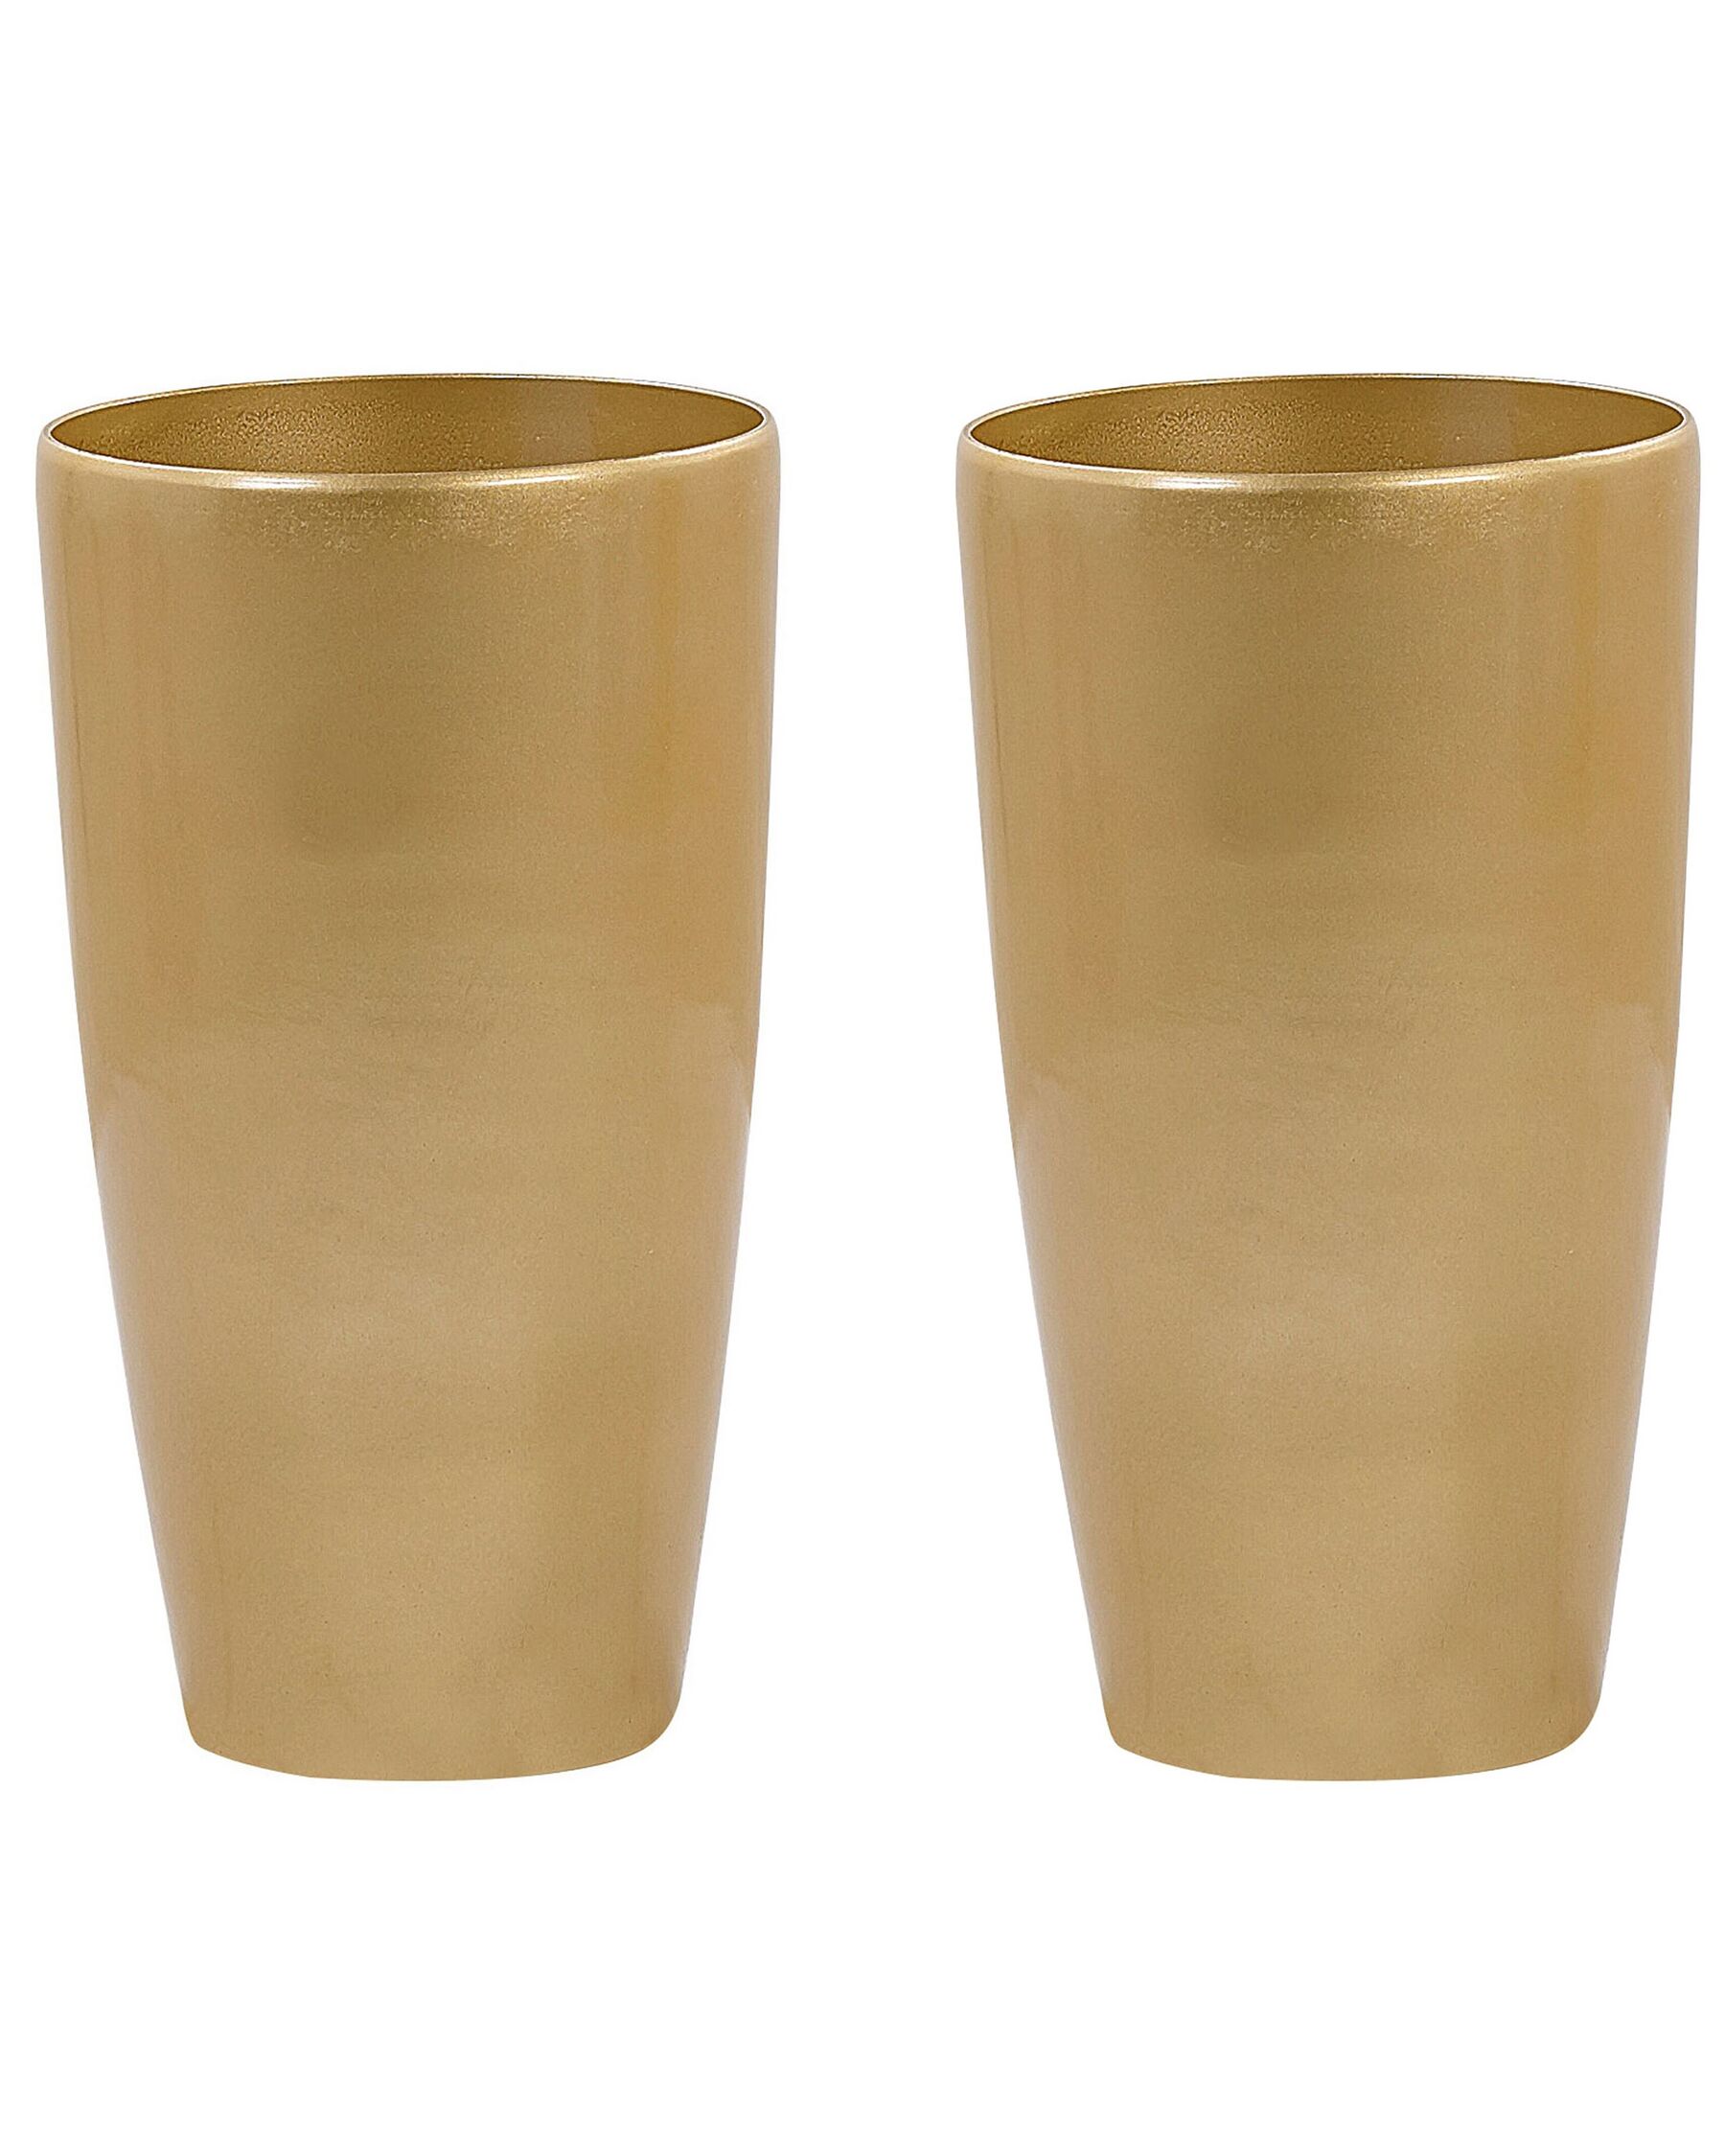 Lot de 2 cache-pots dorés ⌀ 32 cm TSERIA_844430